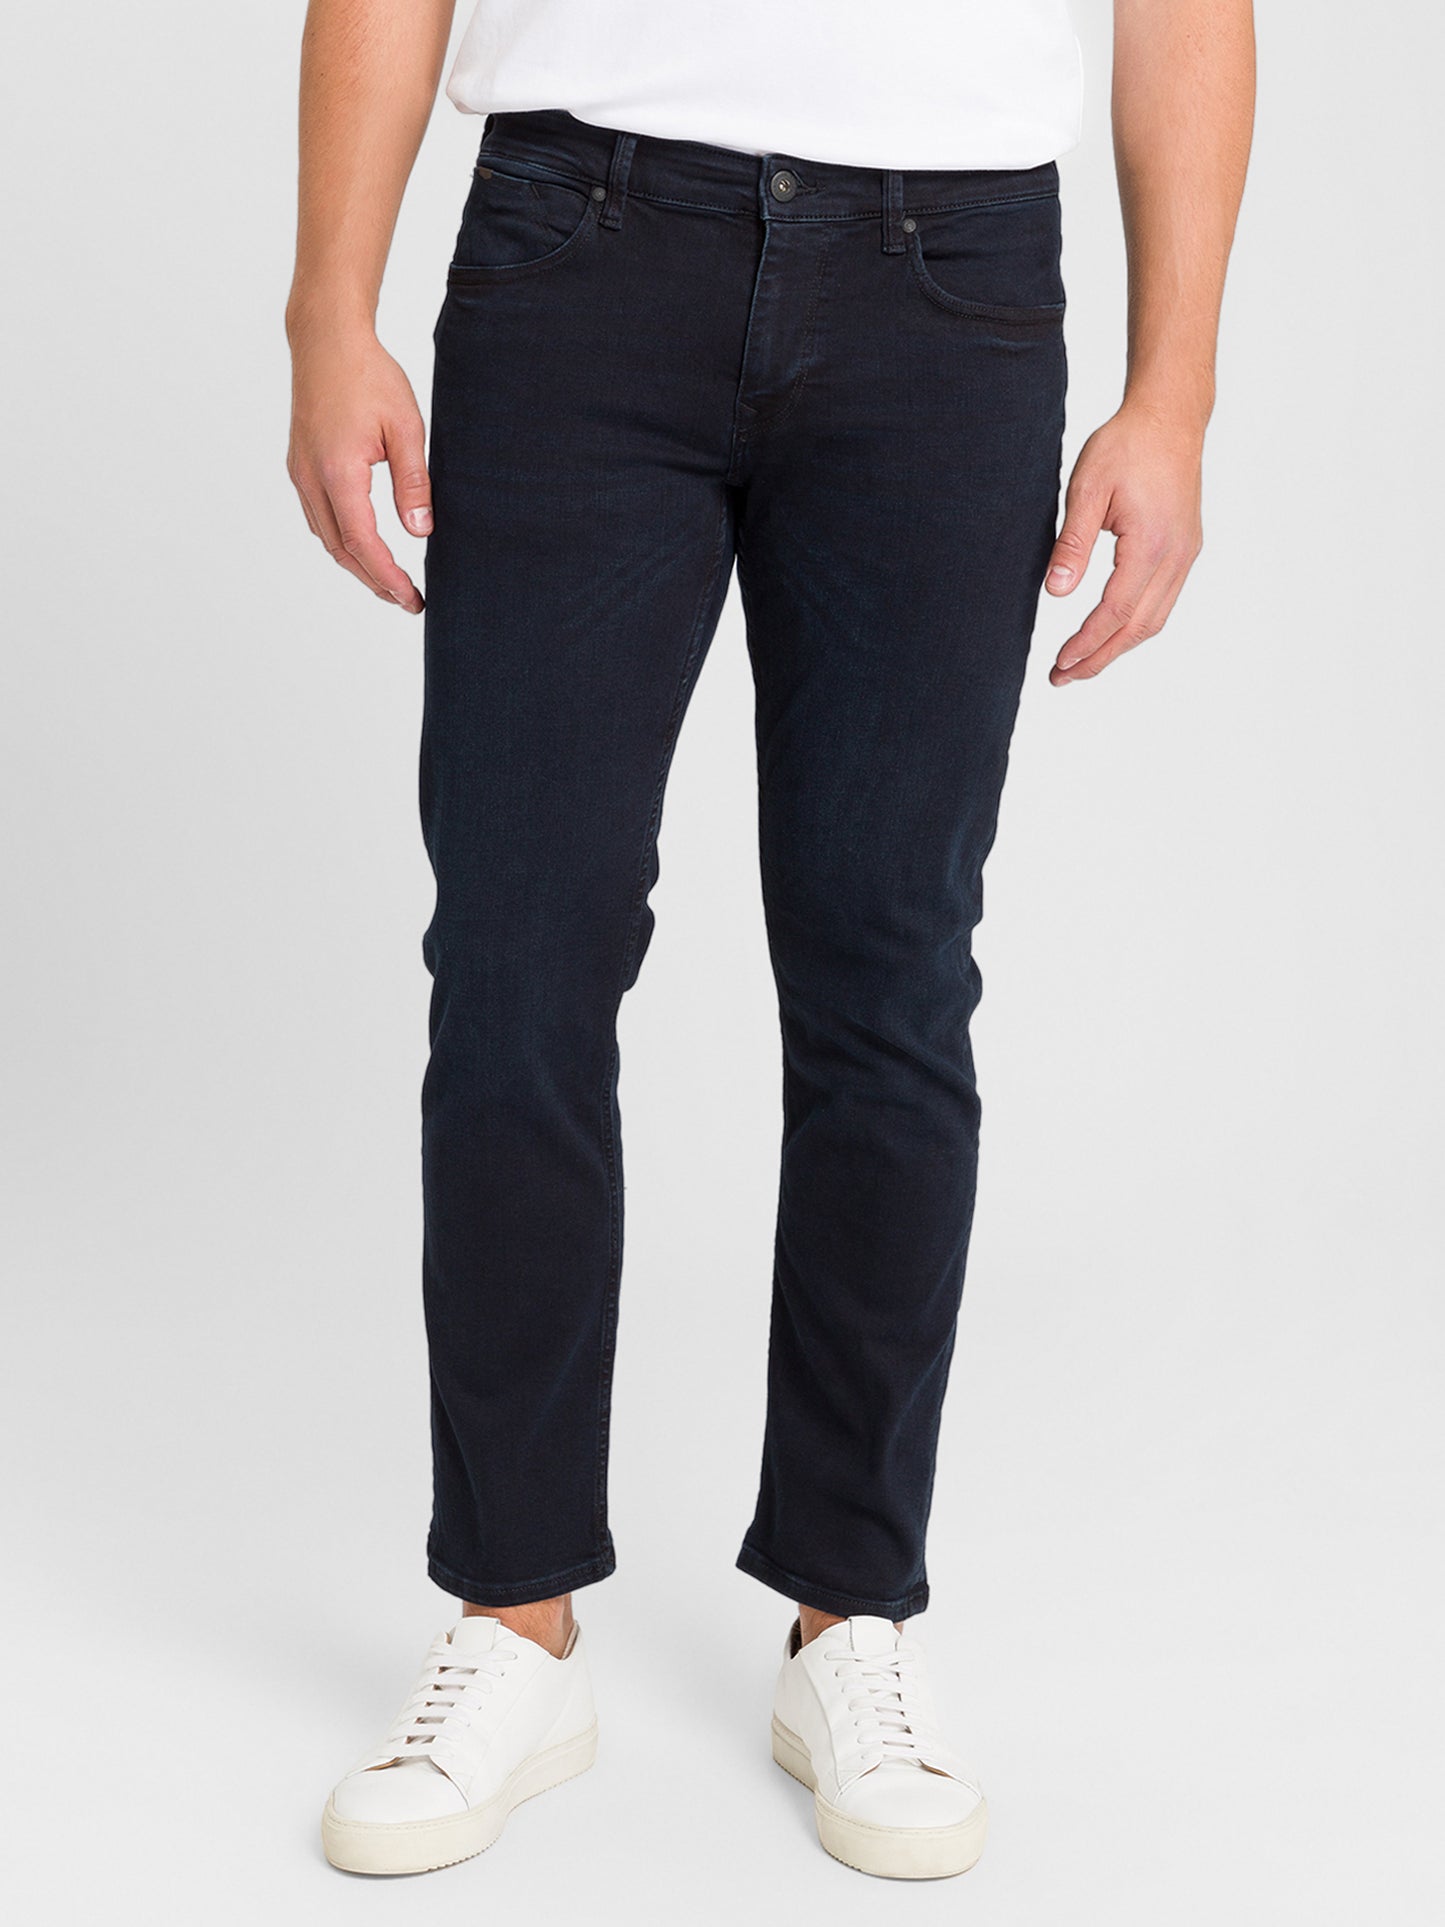 Dylan Herren Jeans Regular Fit Regular Waist Straight Leg schwarzblau